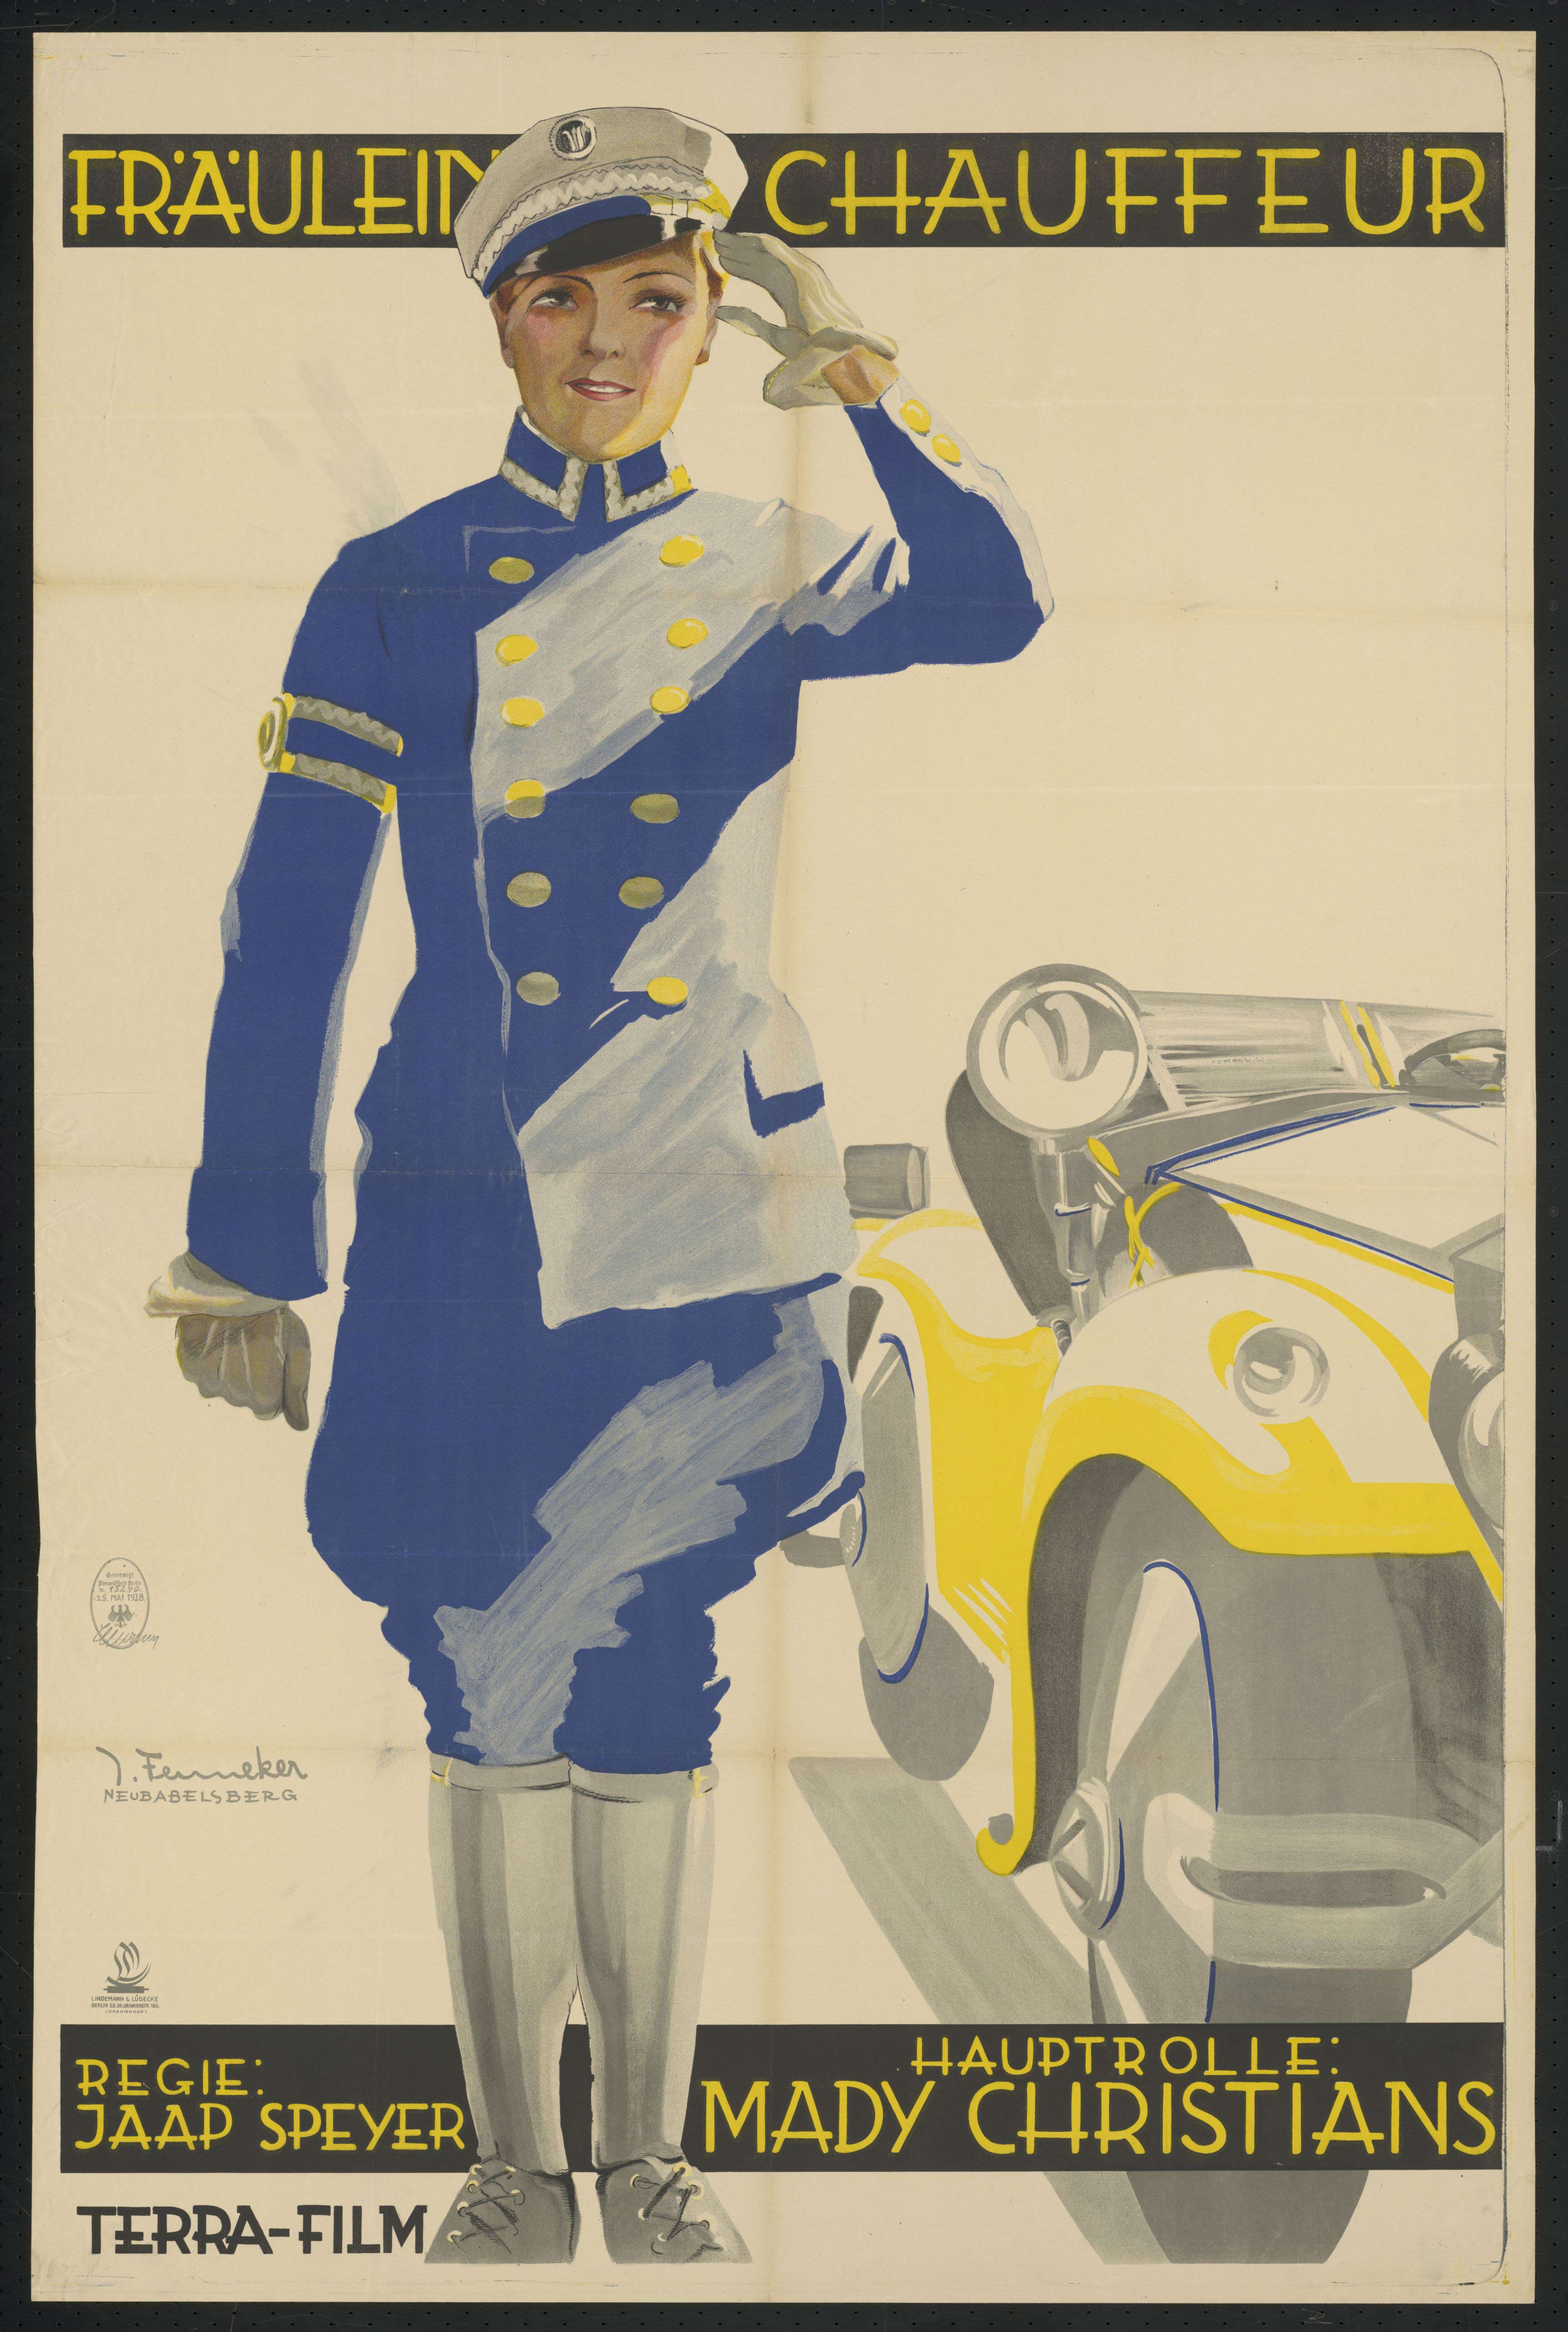 Film poster by Josef Fenneker: Fräulein Chauffeur, Germany 1928, directed by Jaap Speyer